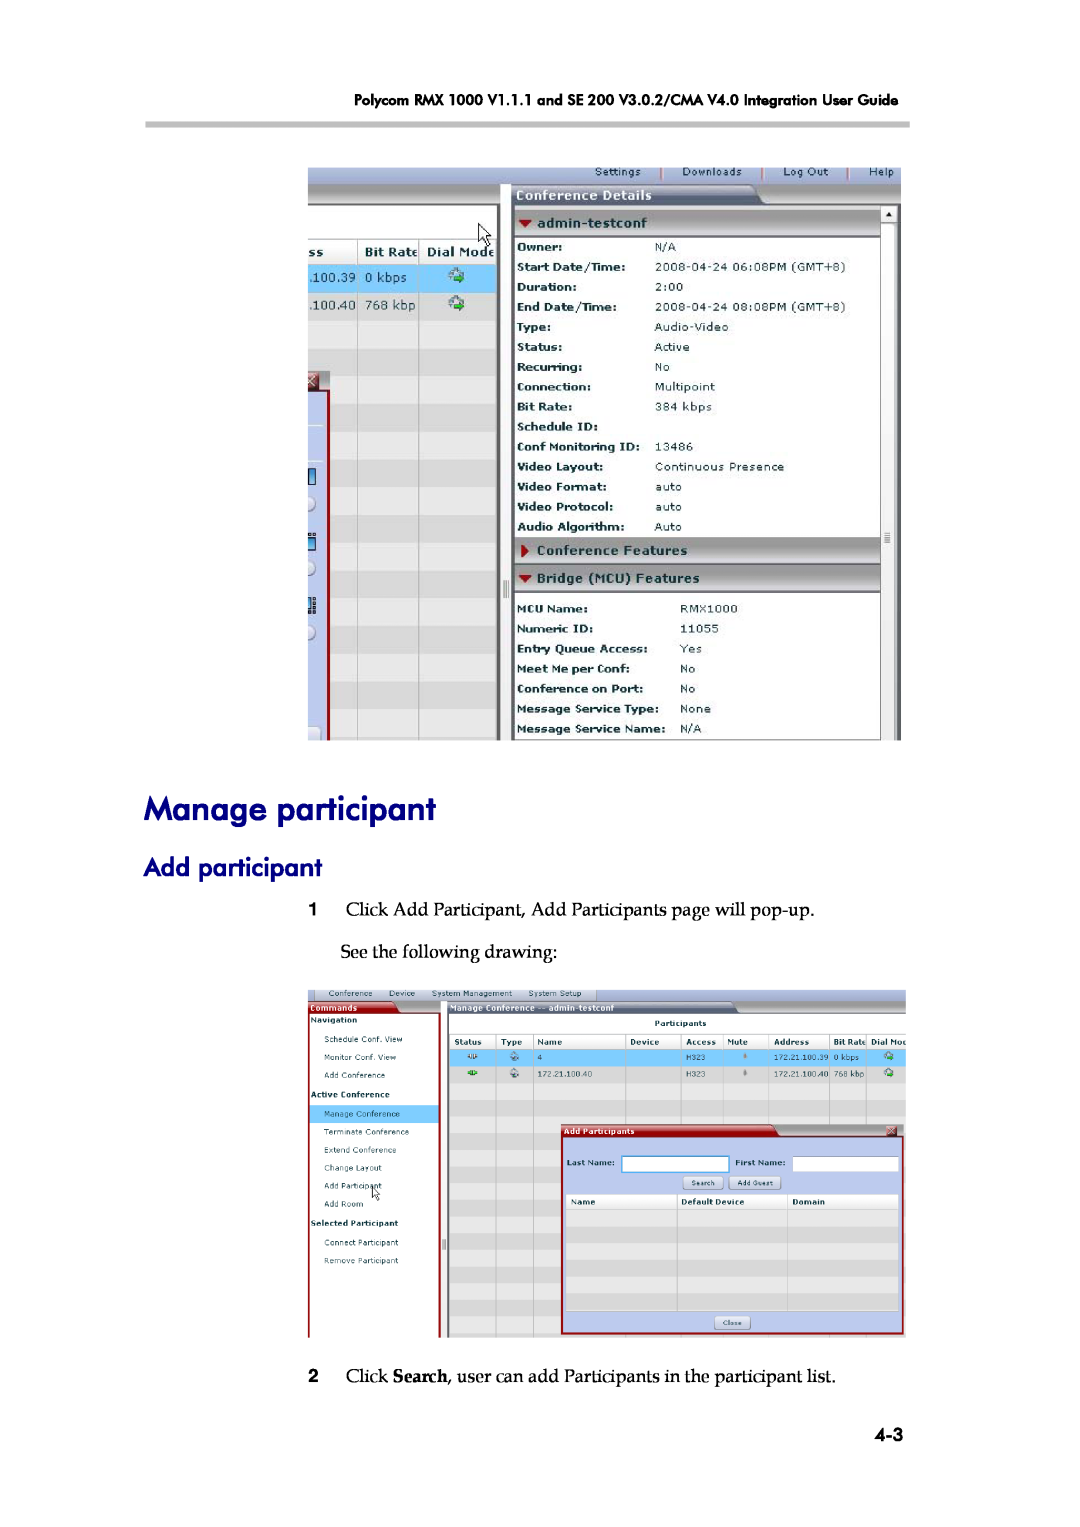 Polycom RMX 1000 V1.1.1, SE 200 V3.0.2/CMA manual Manage participant, Add participant 